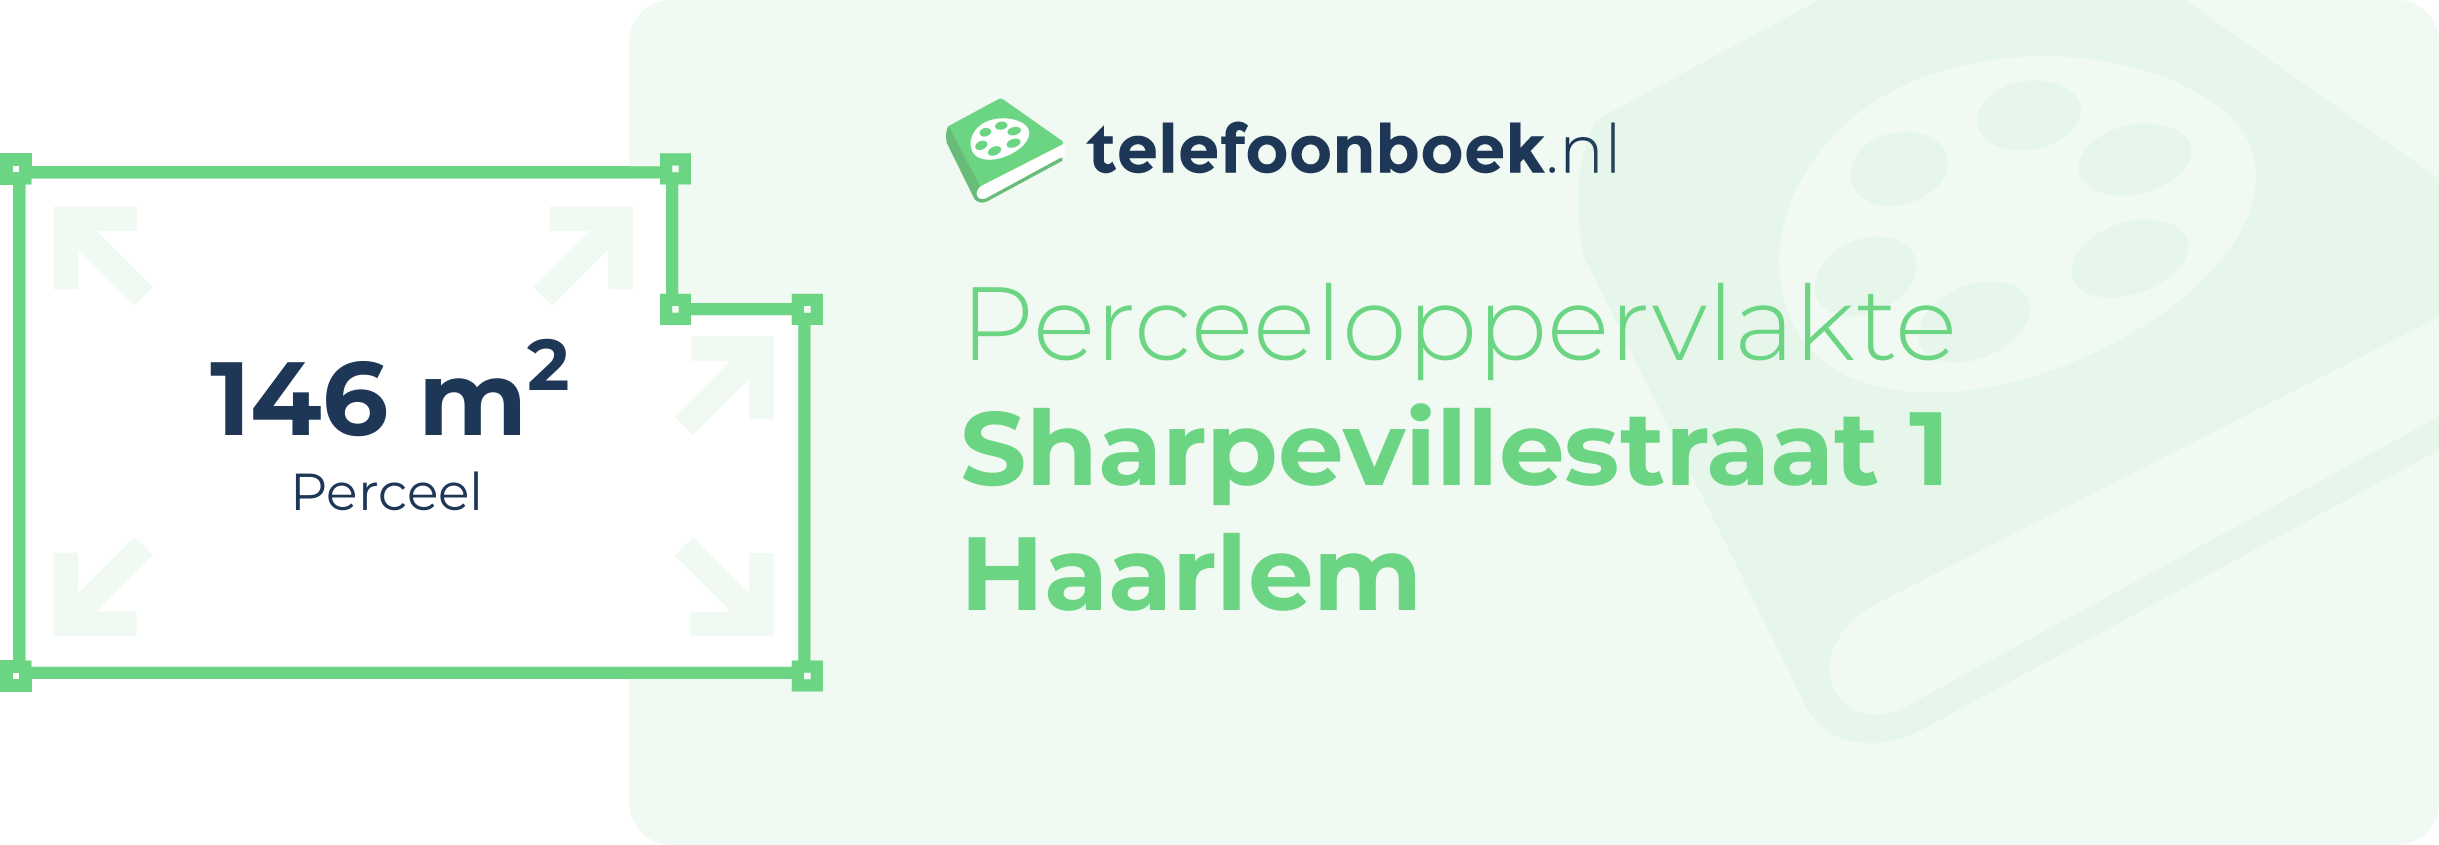 Perceeloppervlakte Sharpevillestraat 1 Haarlem